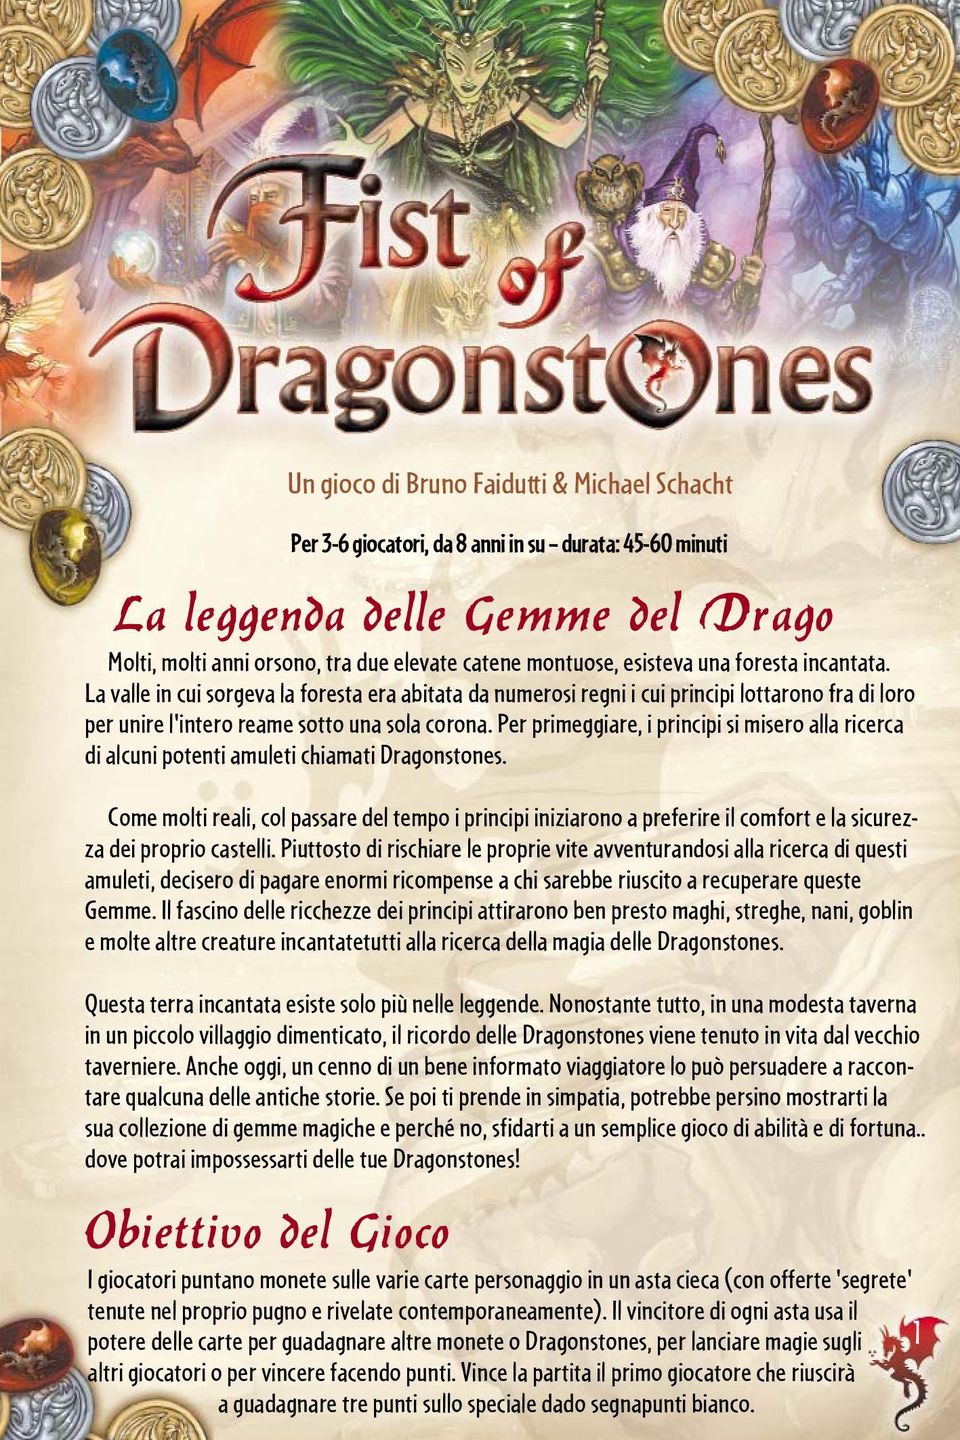 Per primeggiare, i principi si misero alla ricerca di alcuni potenti amuleti chiamati Dragonstones.